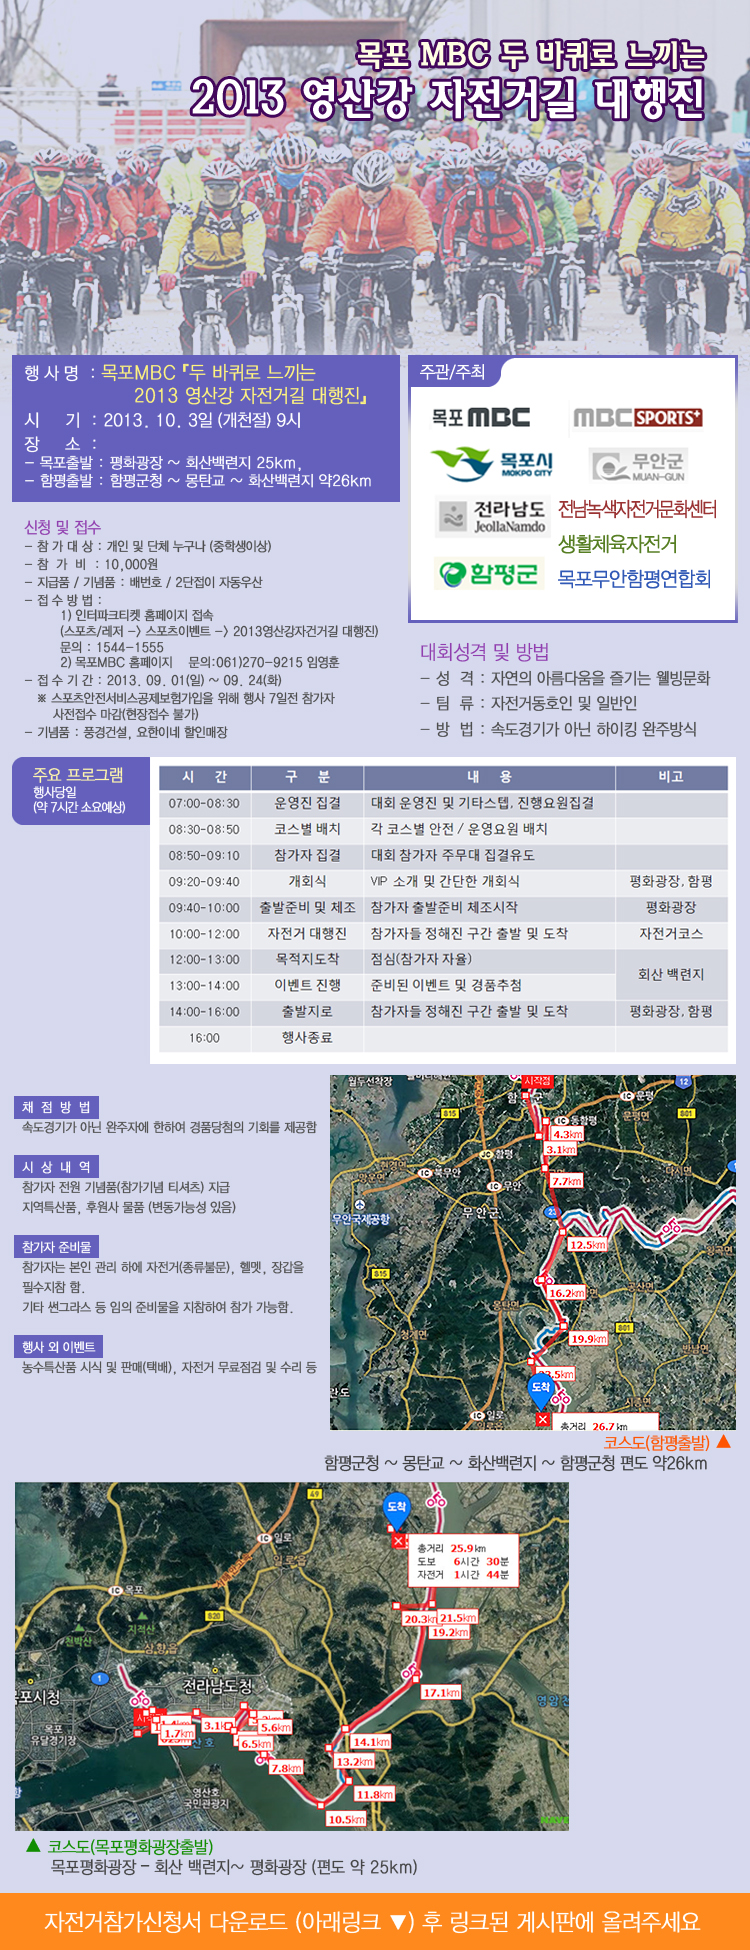 두 바퀴로 느끼는 2013 영산강 자전거길 대행진 행사정보